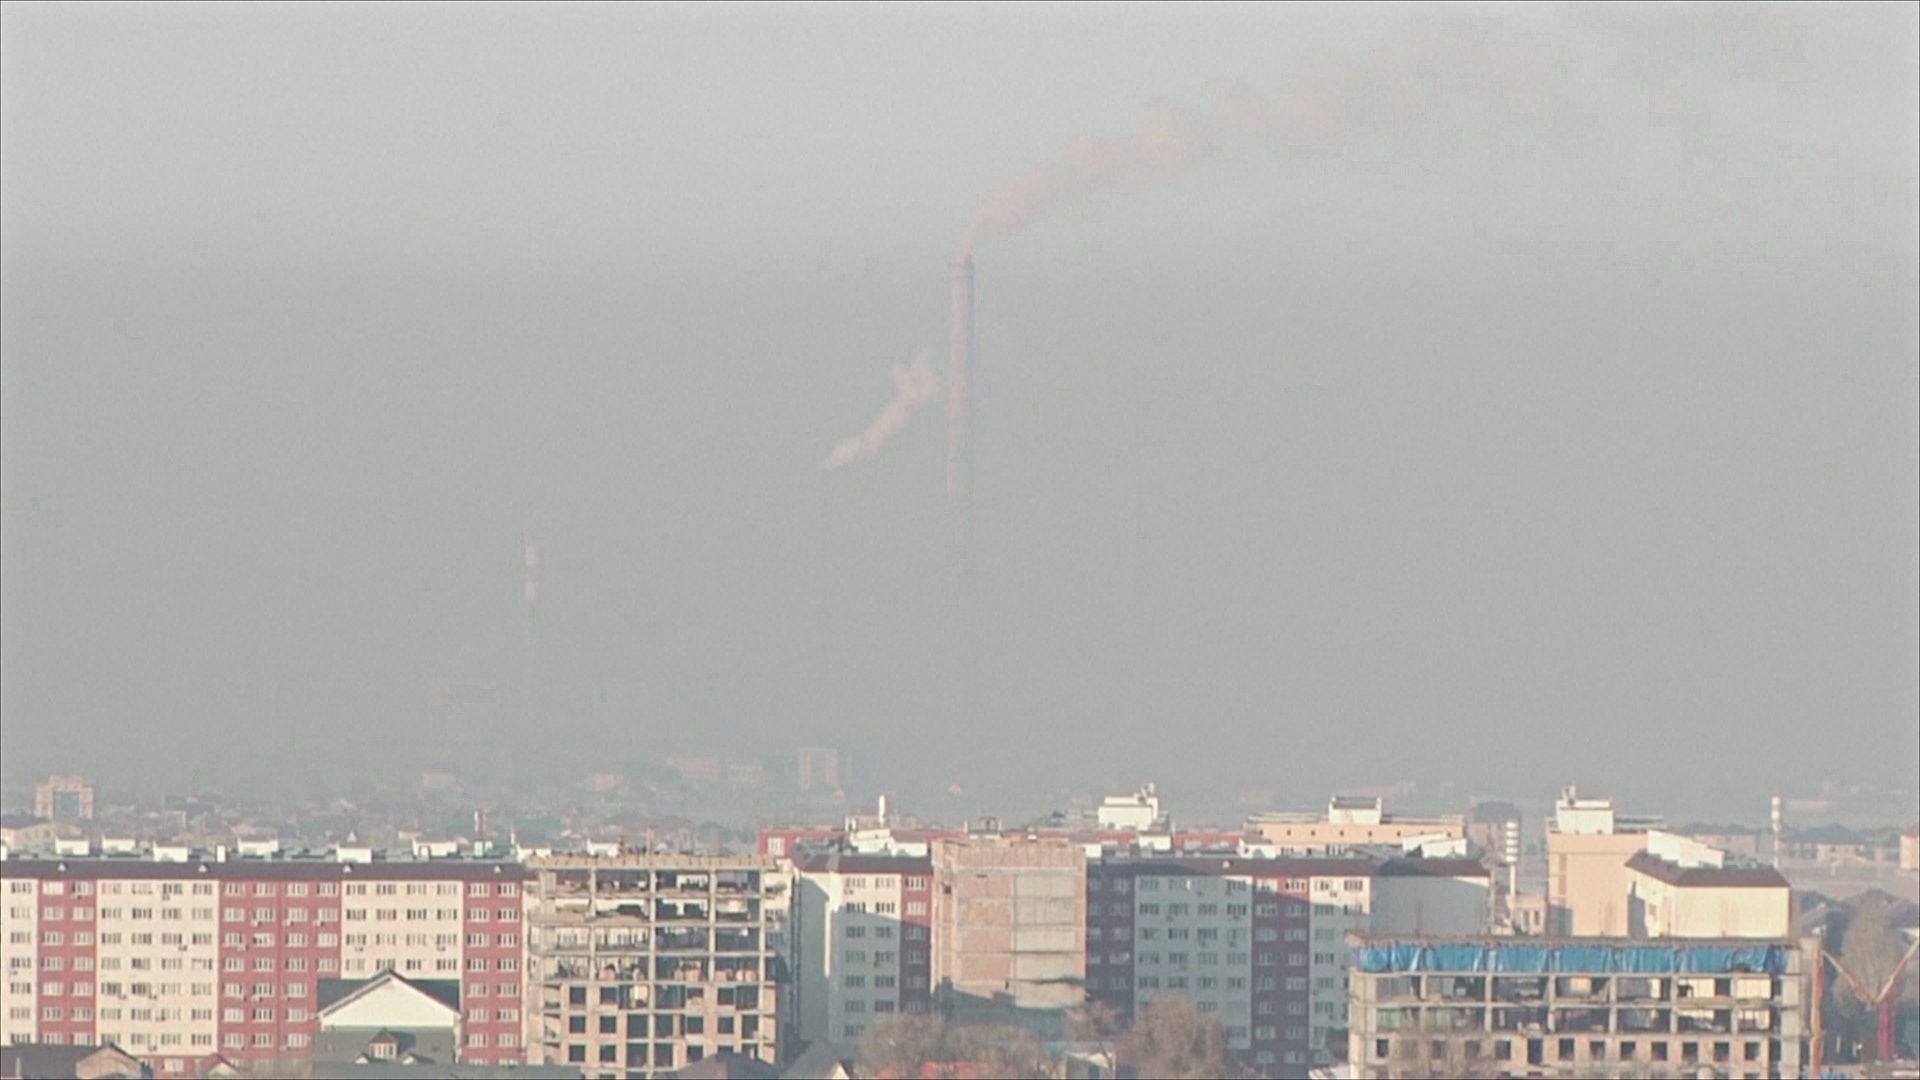 Бишкек ненадолго возглавил рейтинг городов с самым грязным воздухом в мире